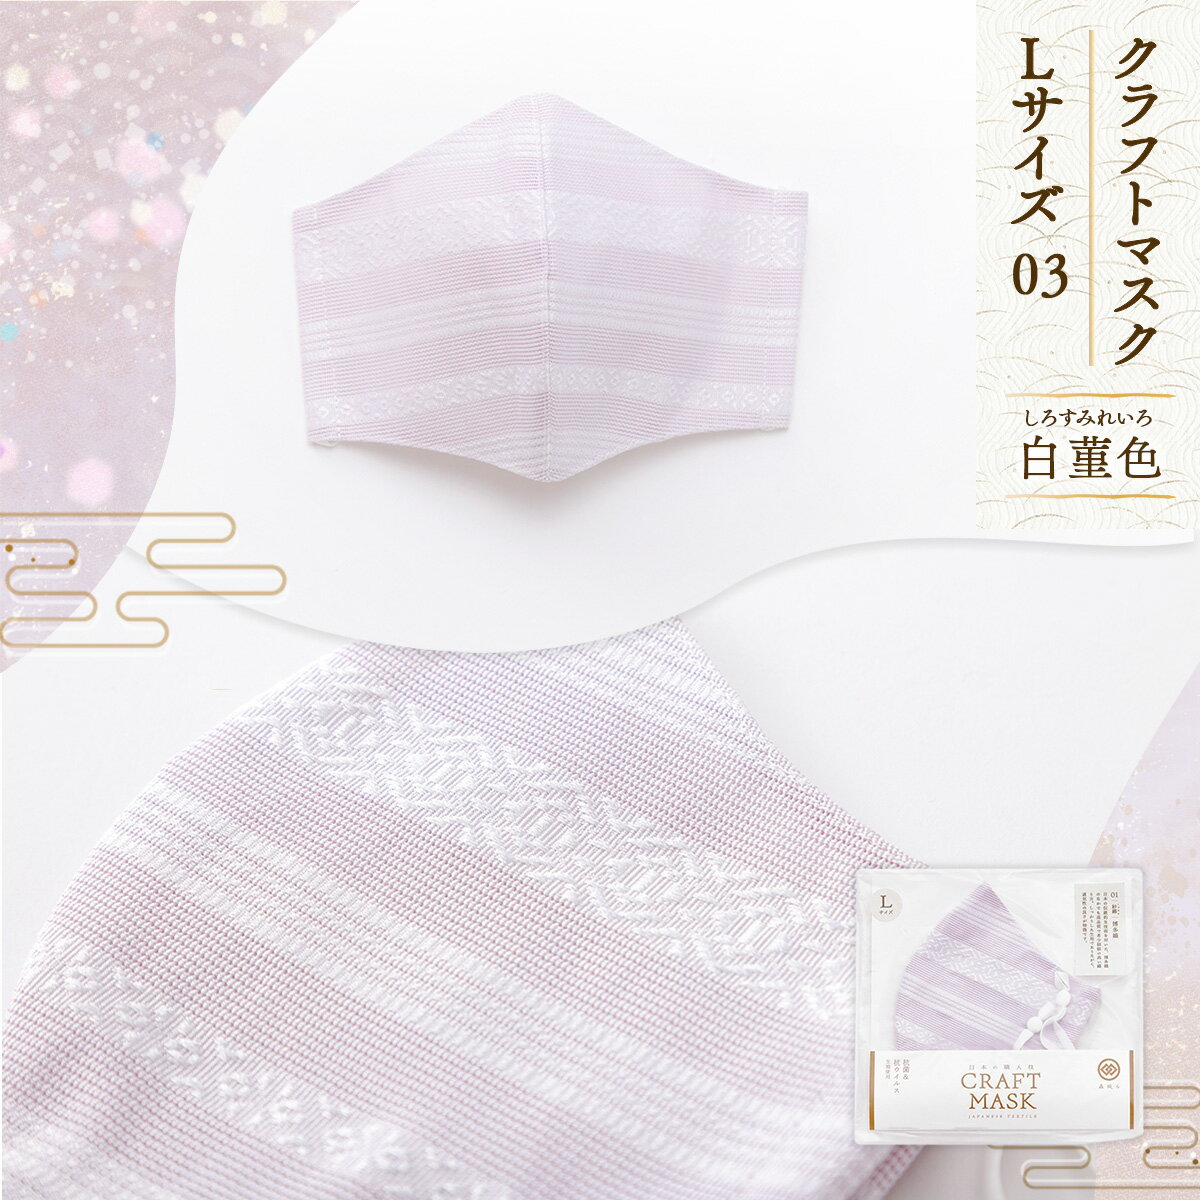 クラフトマスク L 03 白菫色 しろすみれいろ 送料無料 マスク 絹 綿 紫 洗える 博多織 織物 日本製 国産 伝統 工芸